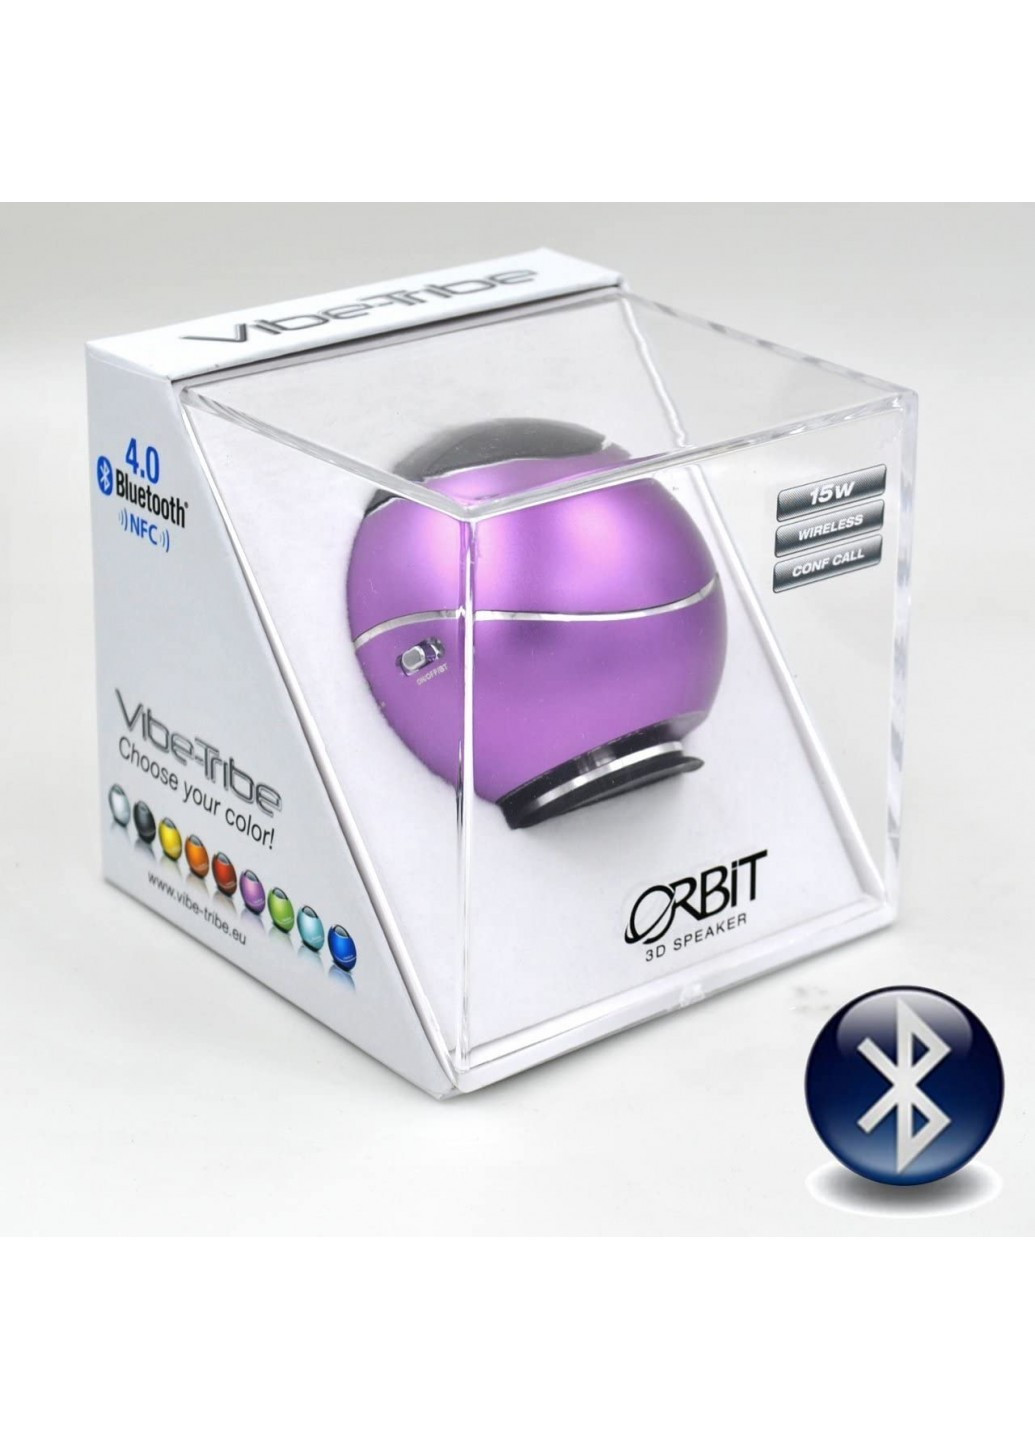 Віброколонка Orbit speaker 15 Вт; пурпурна Vibe-Tribe 32663 (219327743)